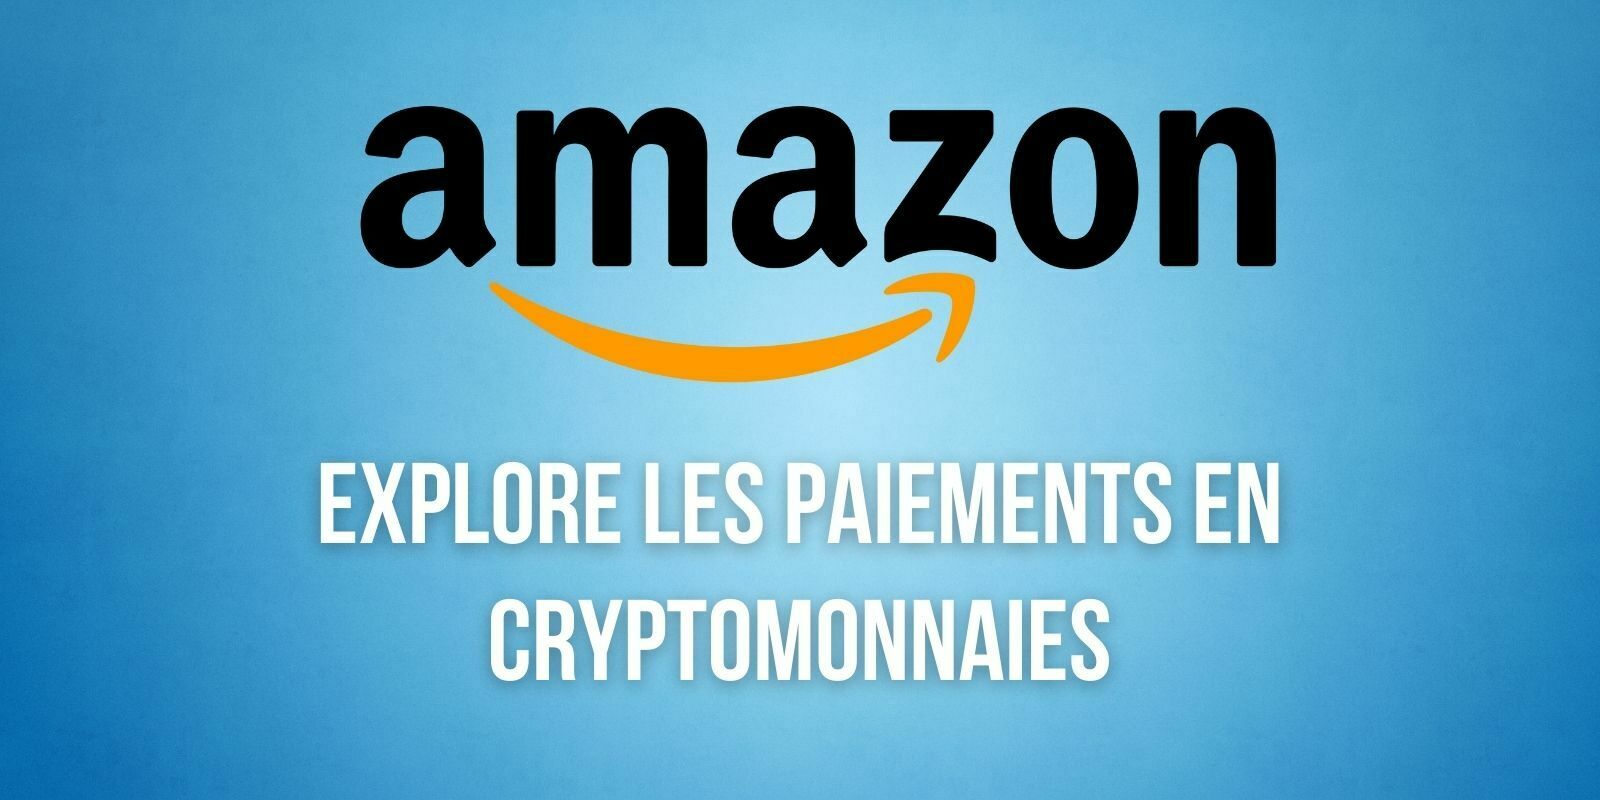 Amazon continue d’explorer les paiements en cryptomonnaies